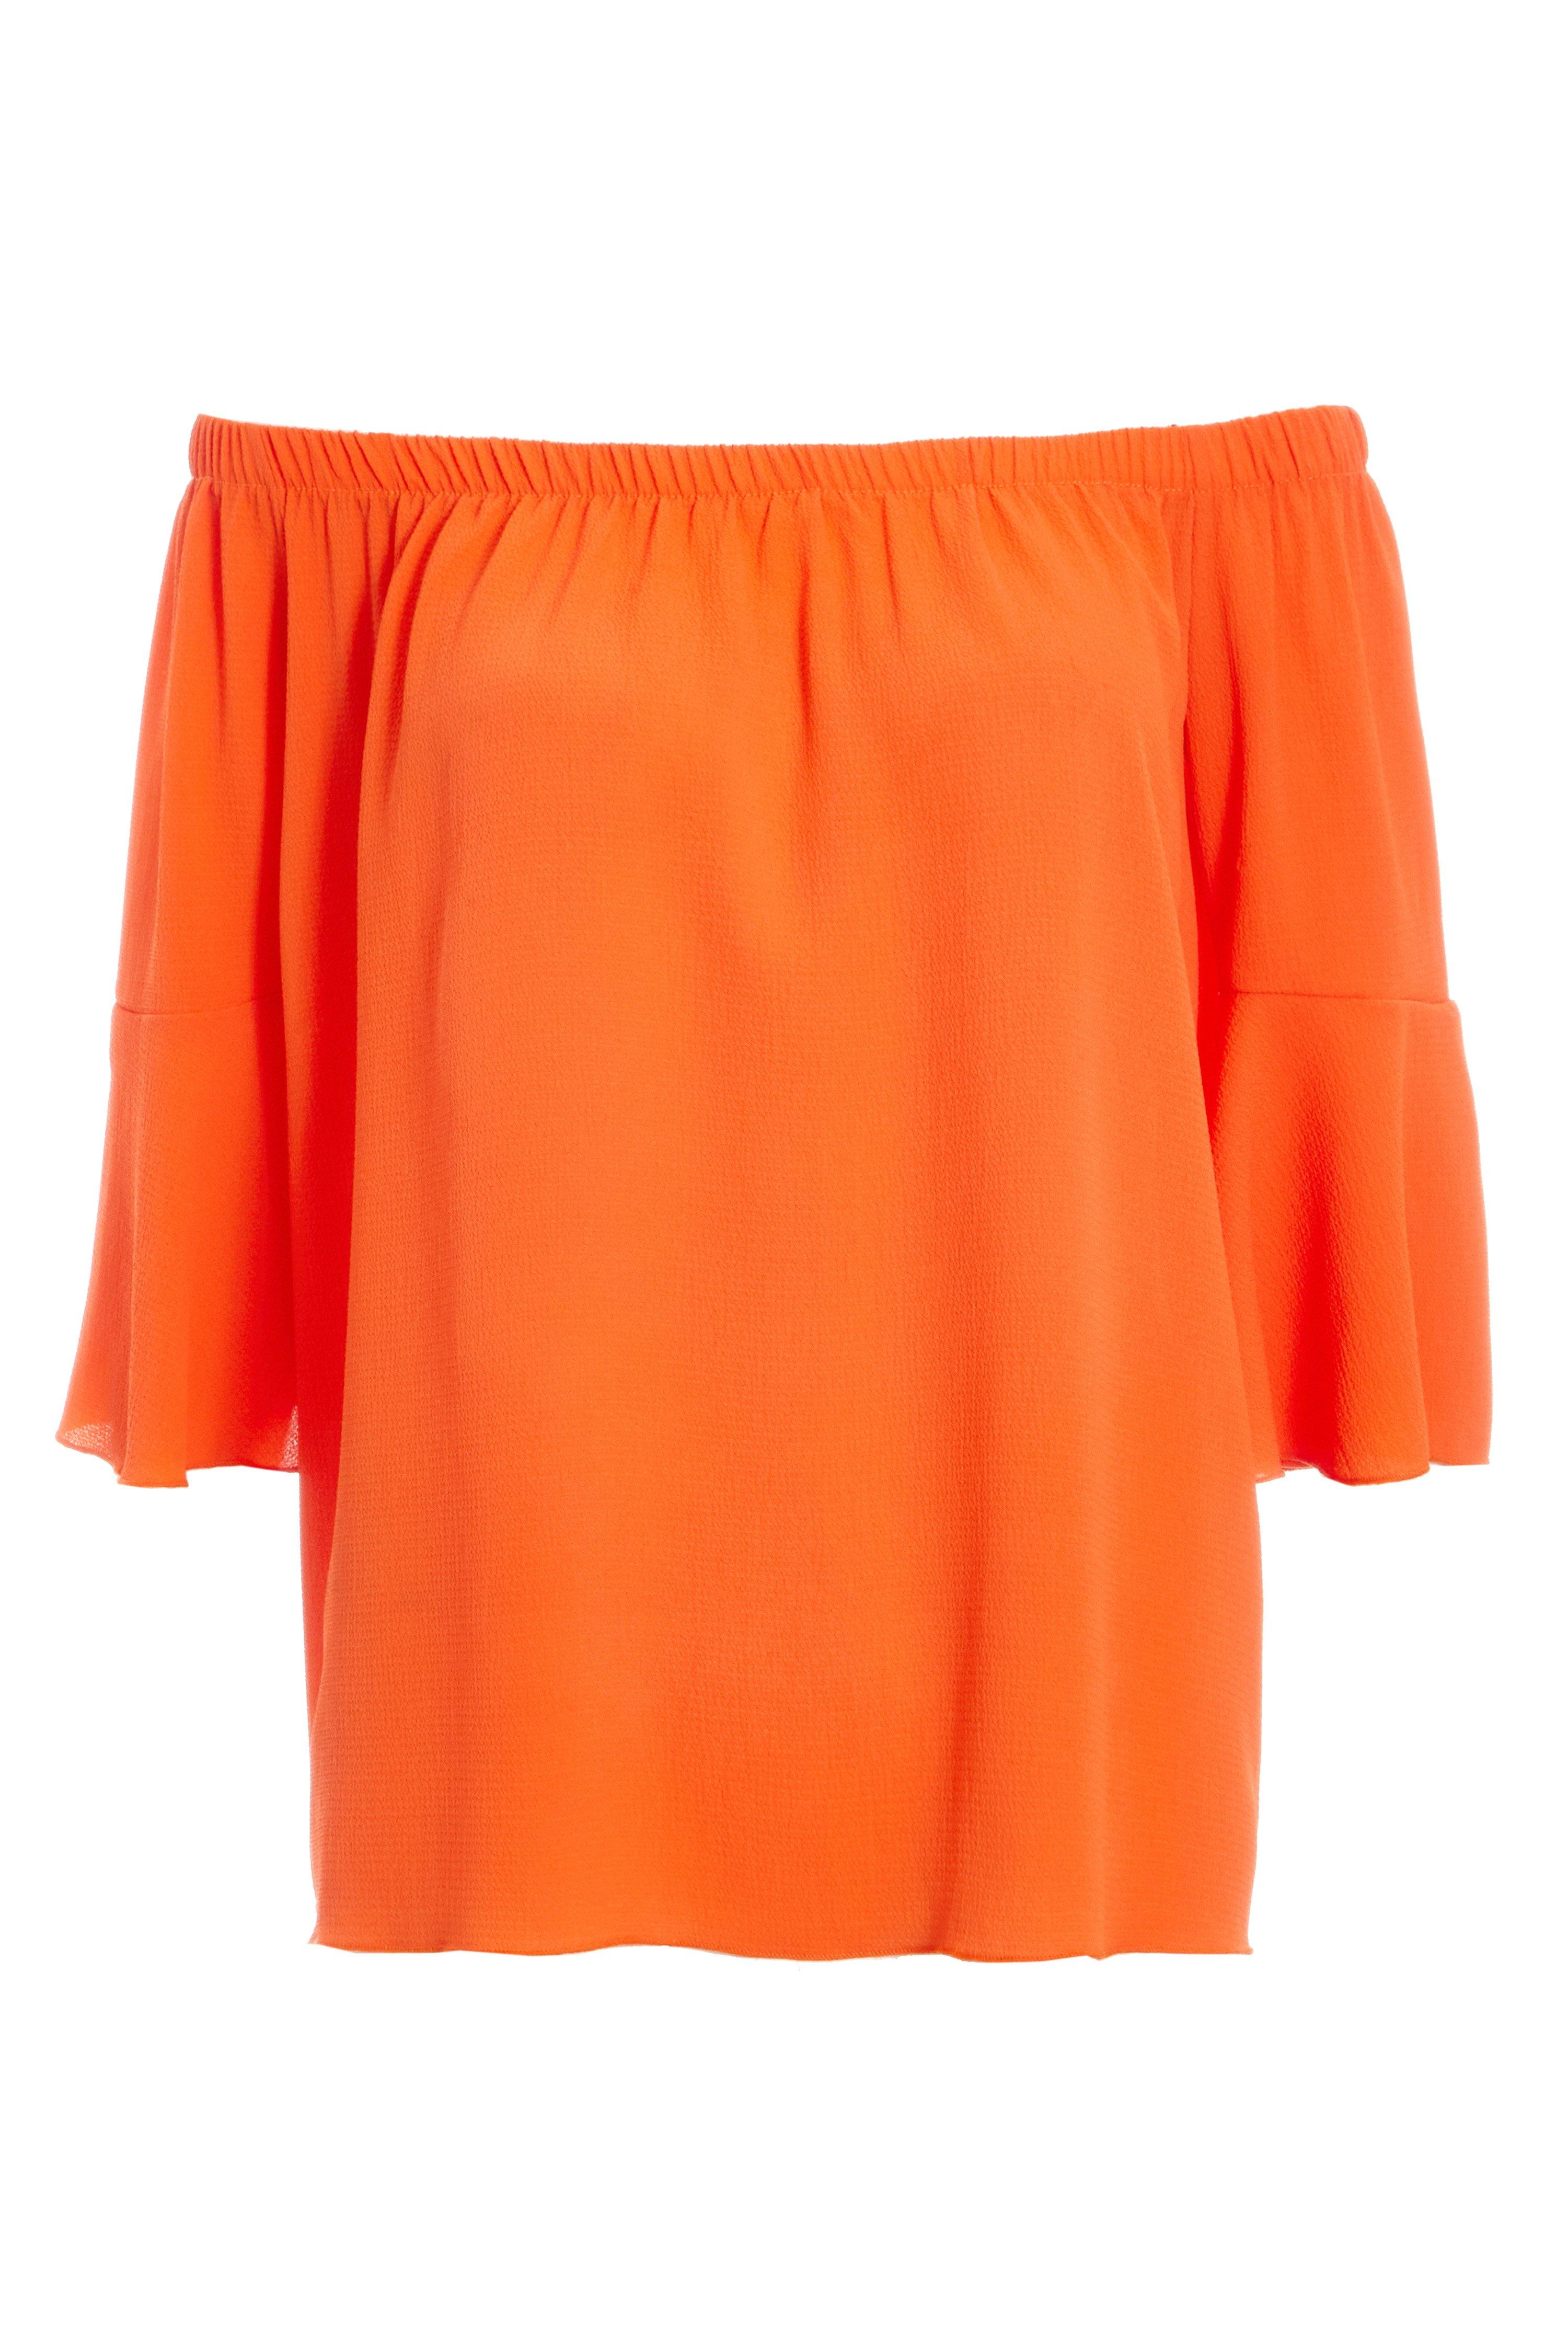 Orange Bardot Flute Sleeve Top - Quiz Clothing